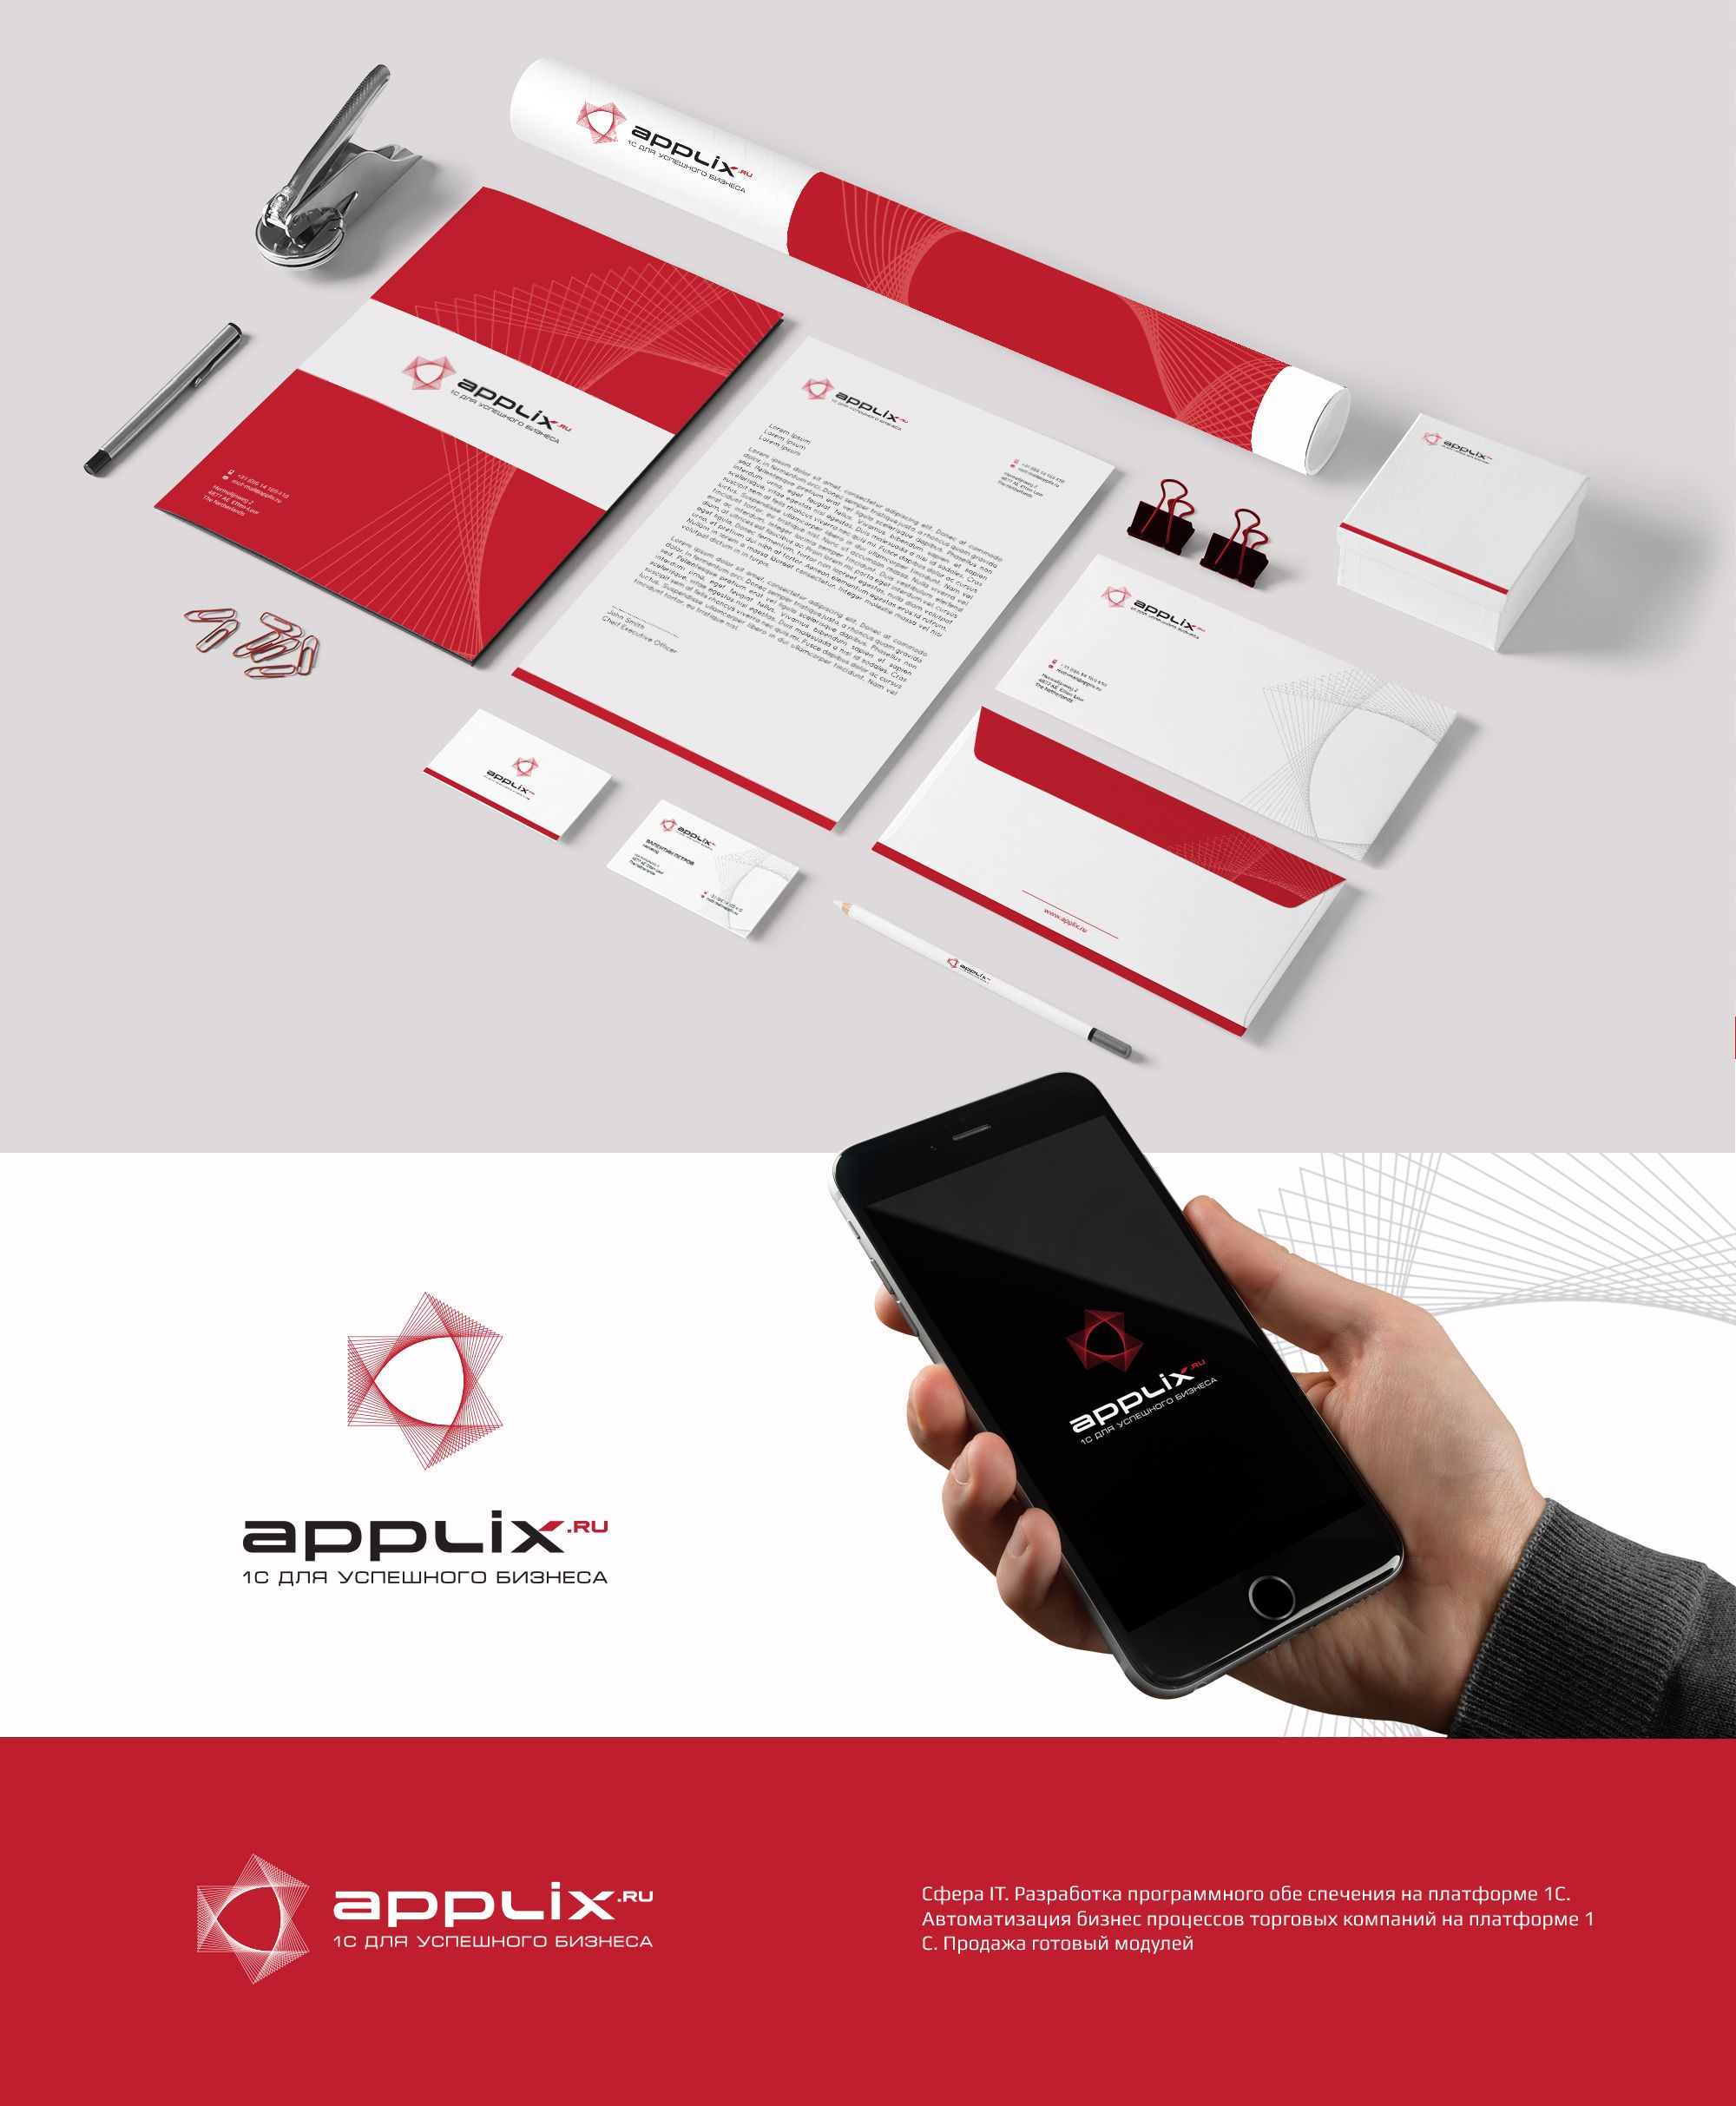 Лого и фирменный стиль для applix.ru / APPLIX.RU - дизайнер U4po4mak